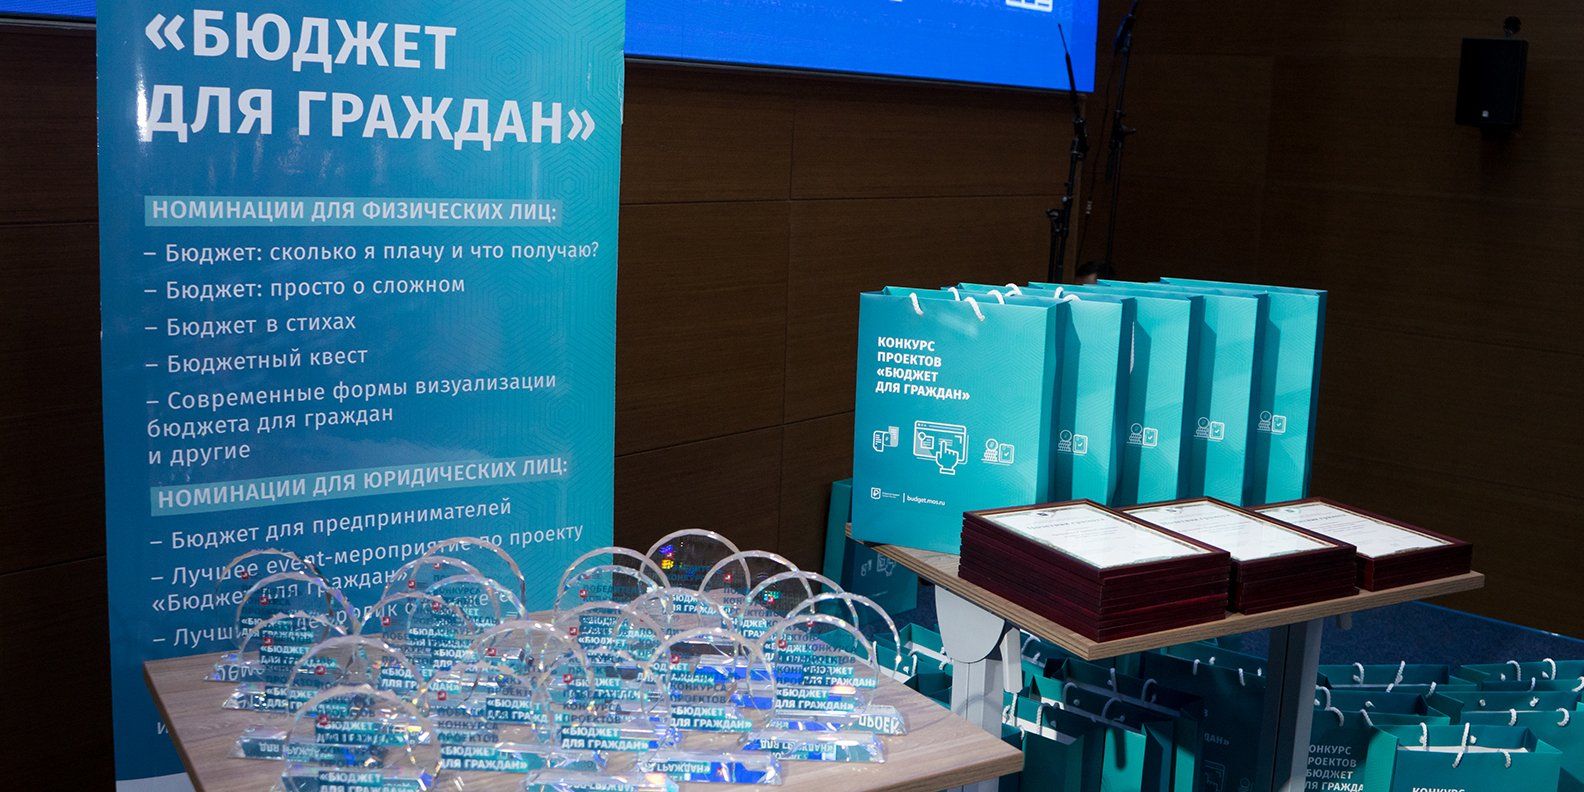 Прием заявок на конкурс «Бюджет для граждан» стартовал в Москве